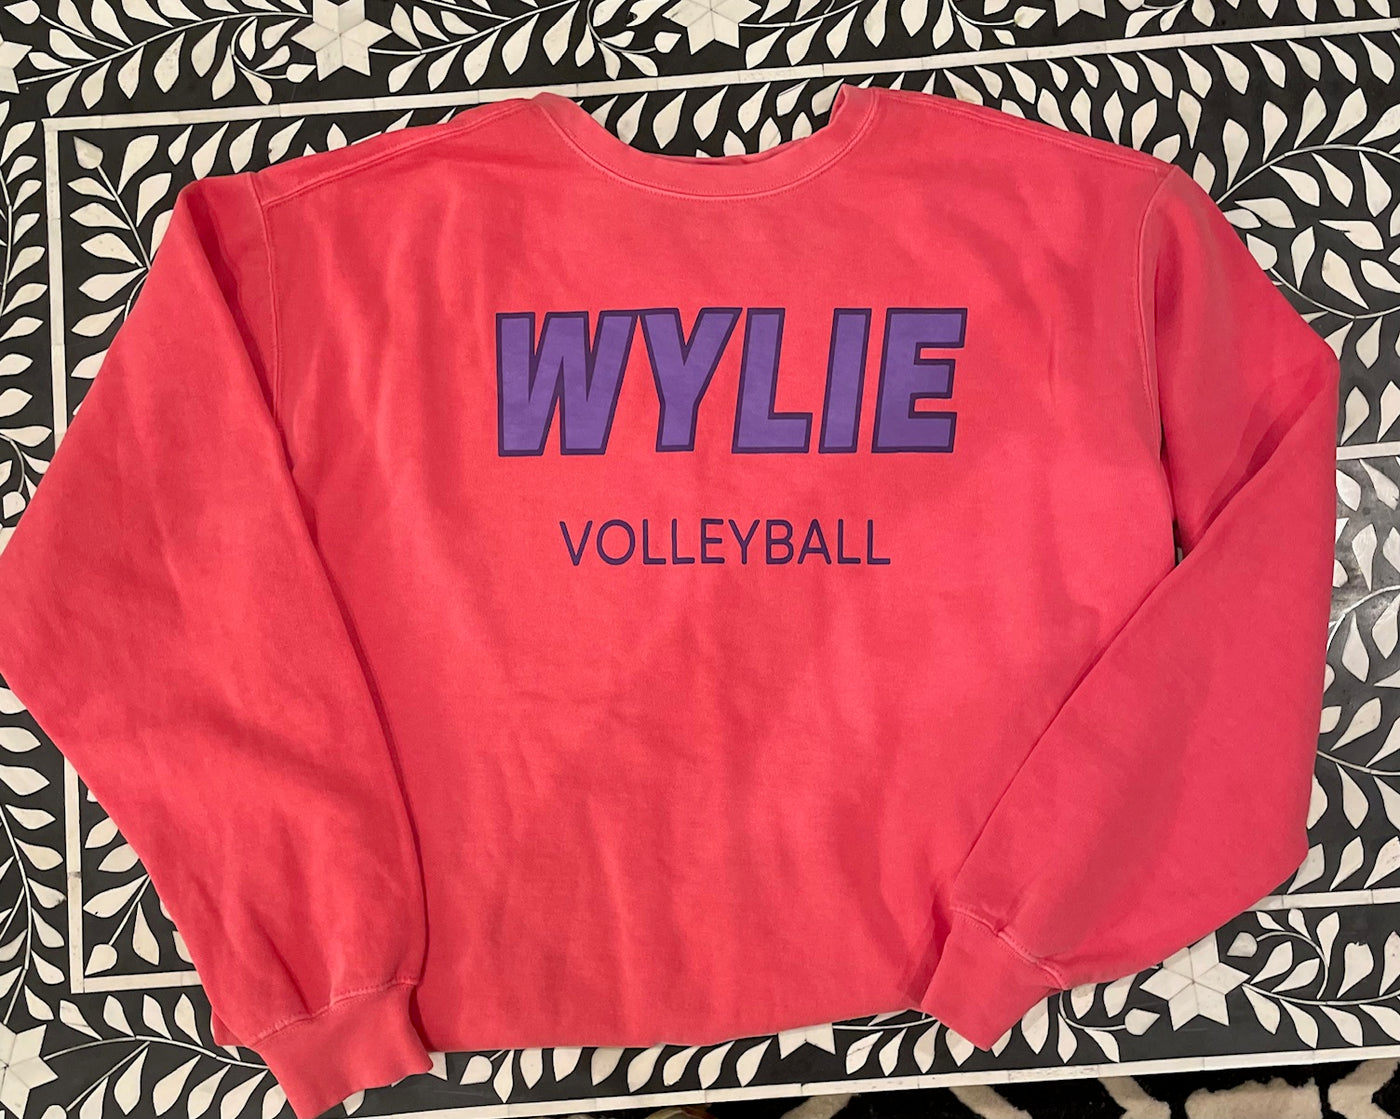 Wylie Volleyball - Summer Sweatshirt